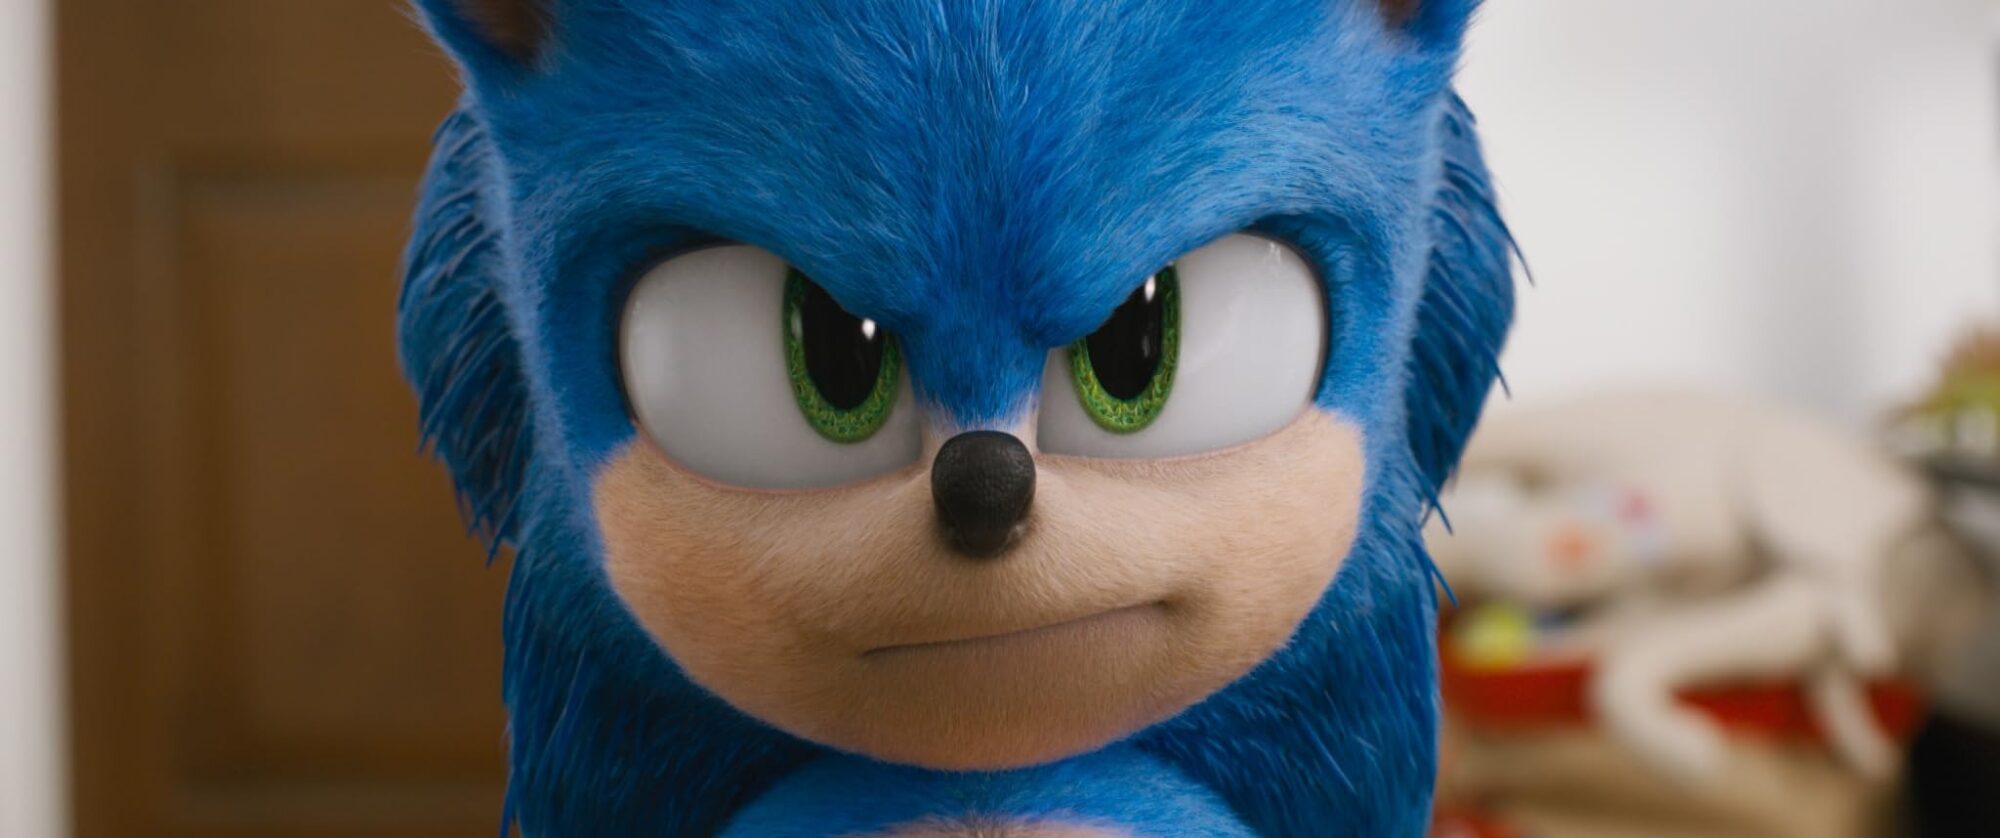 Veja 15 Curiosidades inéditas sobre o filme Sonic, de 2020 7